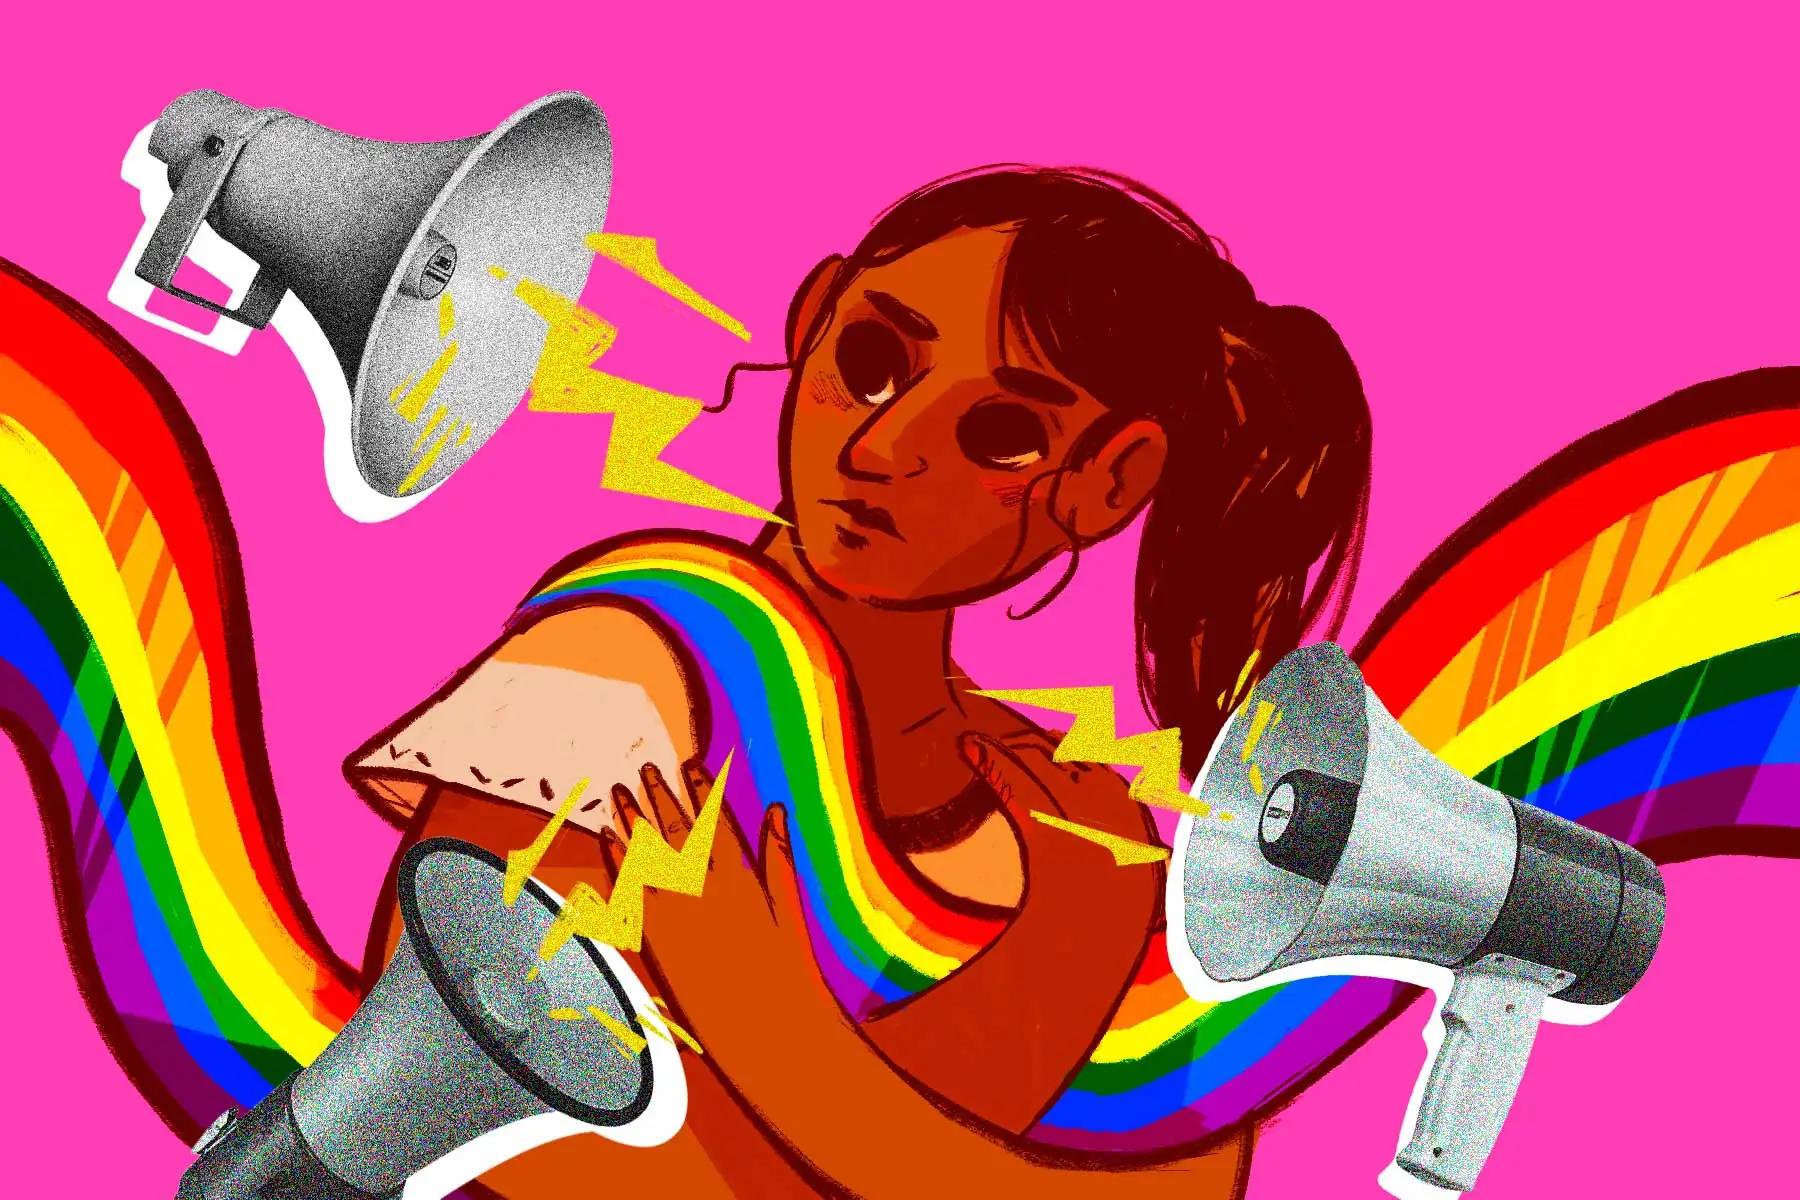 Organizaciones realizan campañas en internet y mundo offline para promover narrativas anti-LGBTQ+